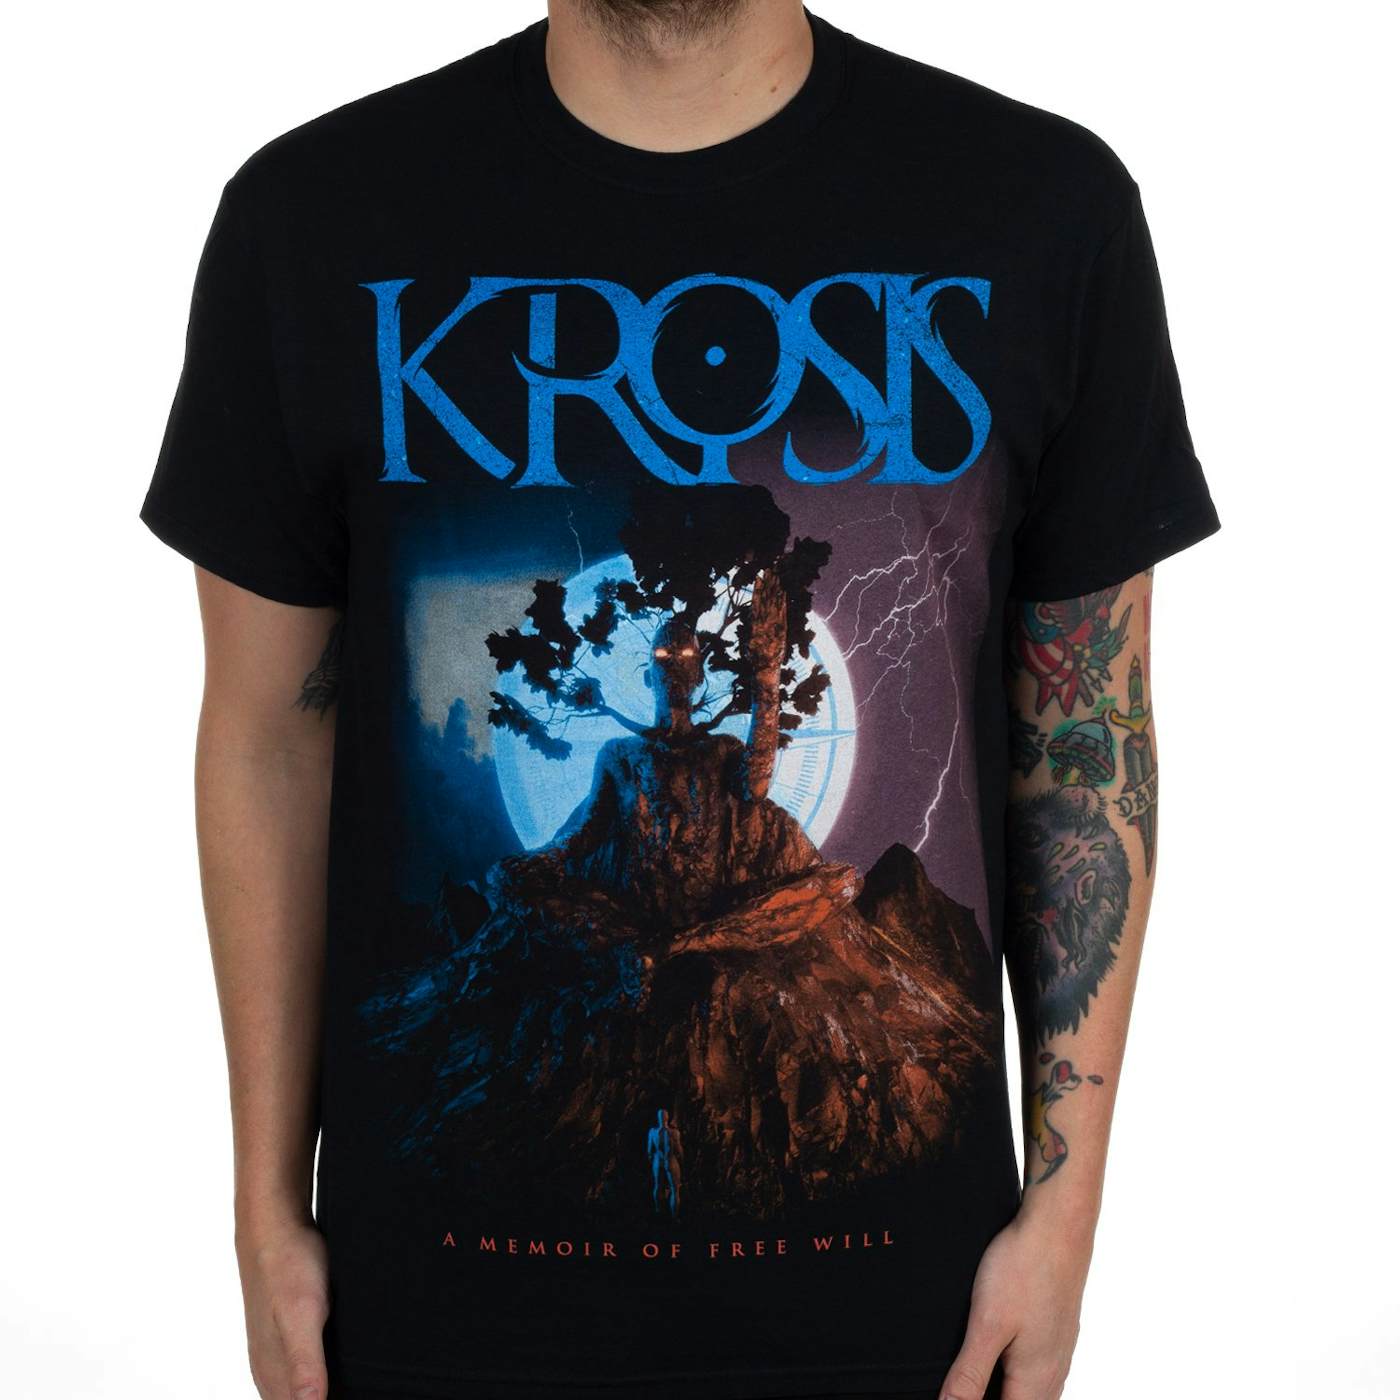 Krosis "Memoir of Free Will" T-Shirt